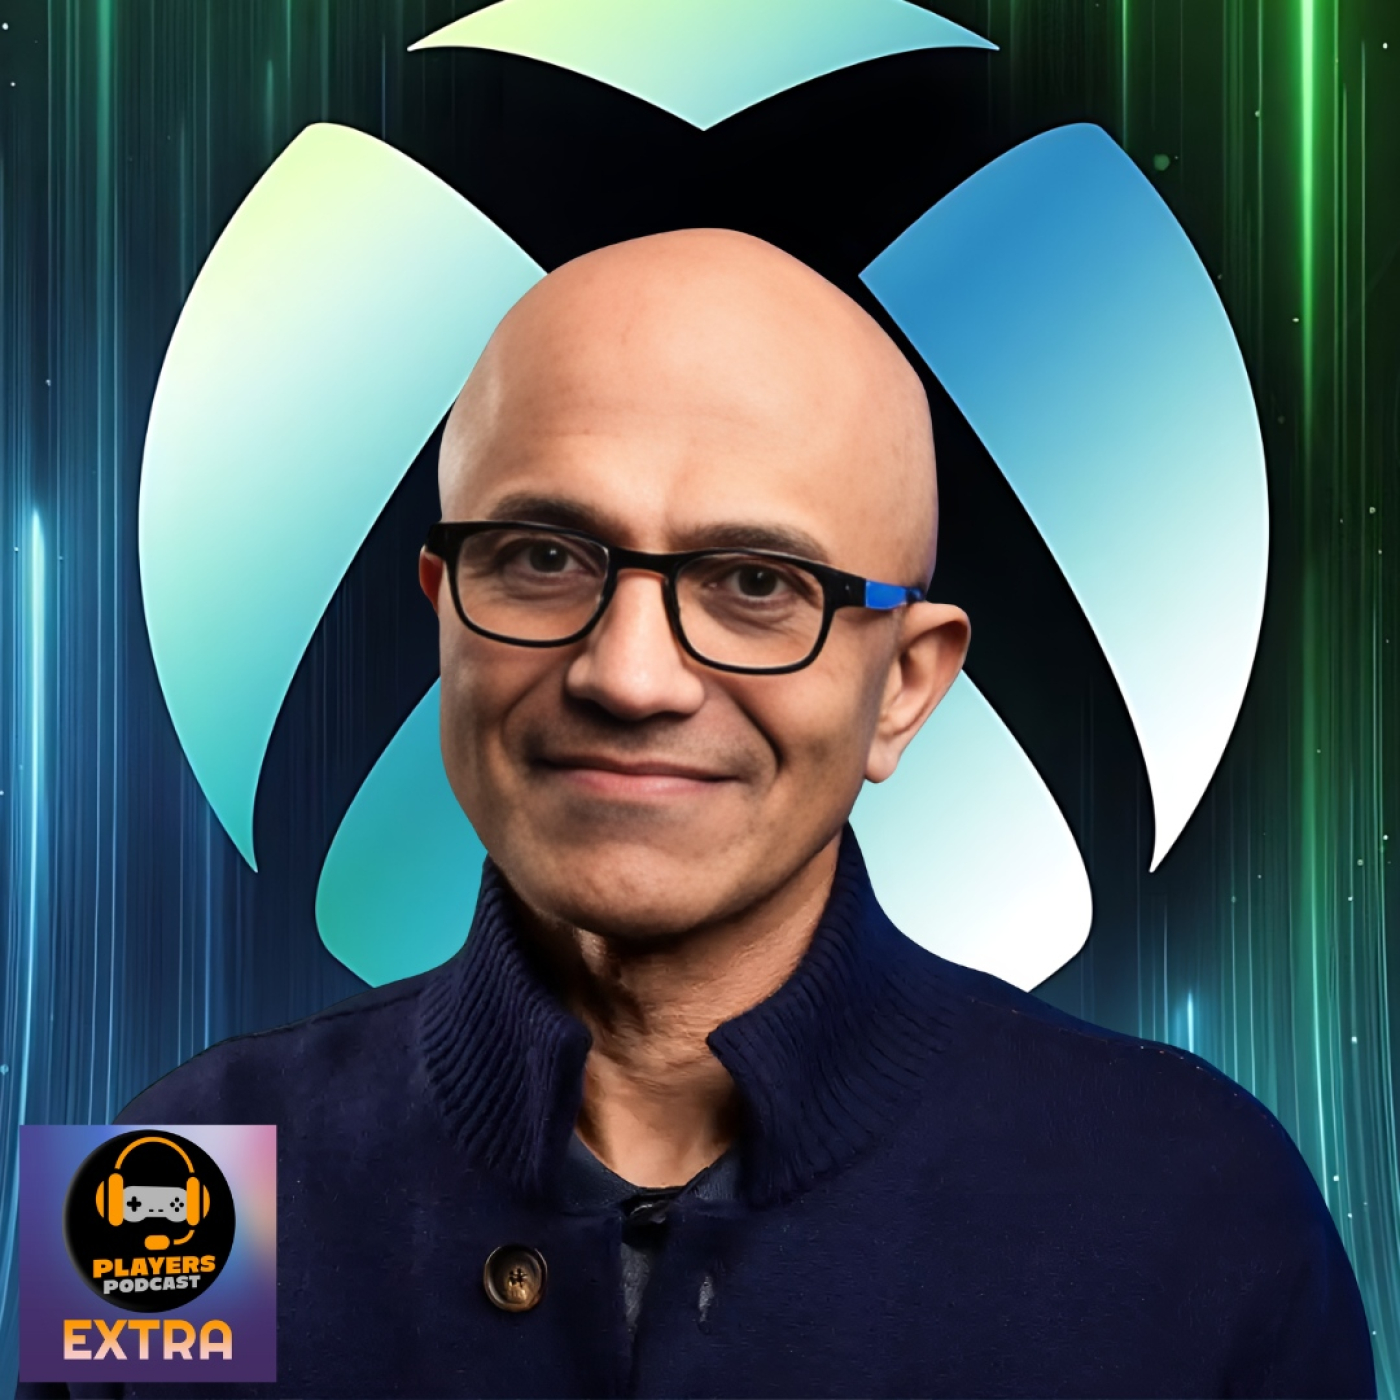 Players EXTRA: Xbox y el futuro de la marca. ¿Que va a pasar?